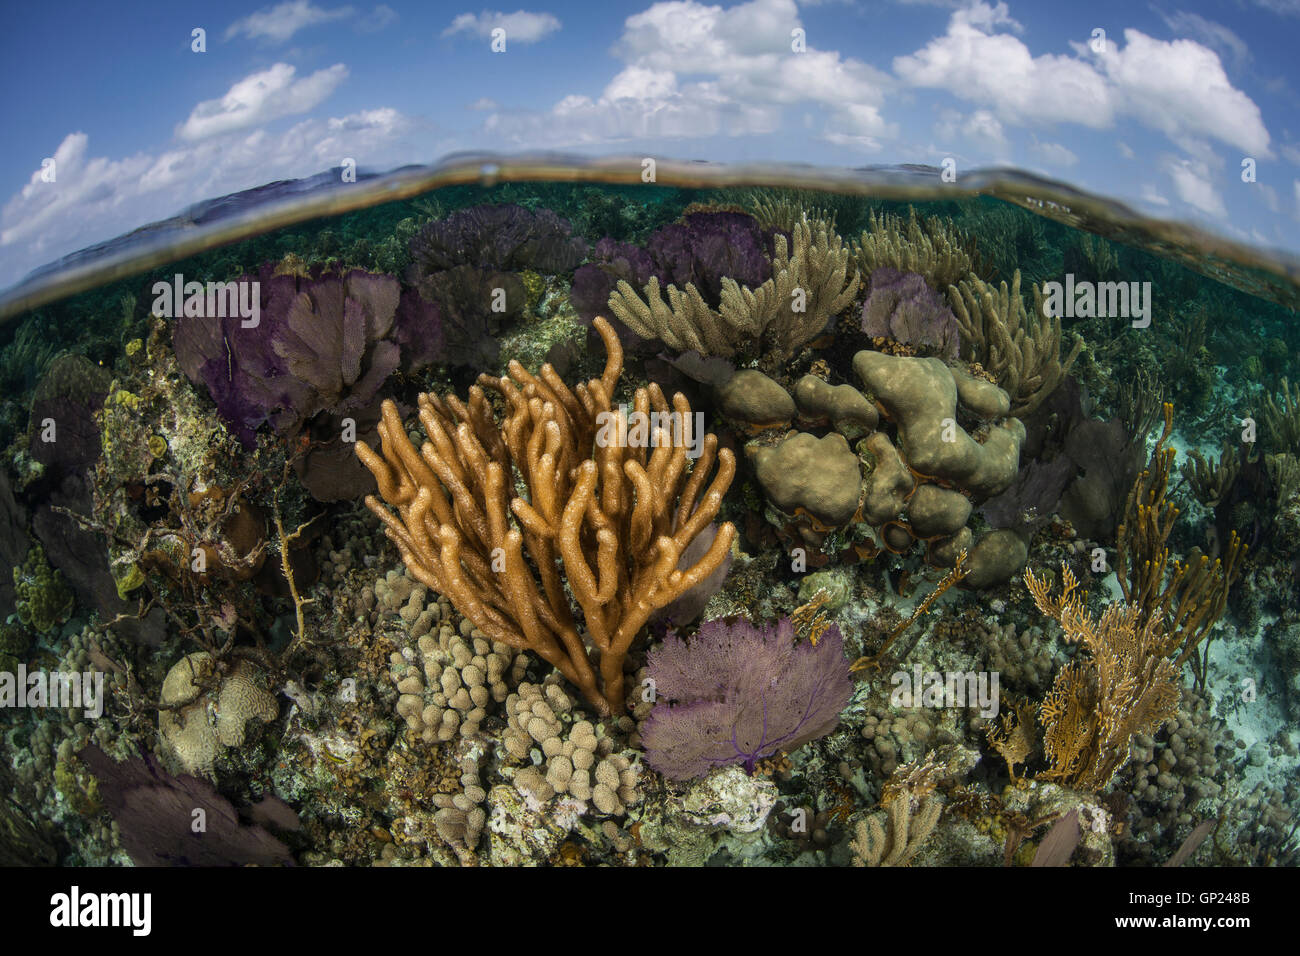 Les récifs coralliens des Caraïbes, Turneffe Atoll, des Caraïbes, le Belize Banque D'Images